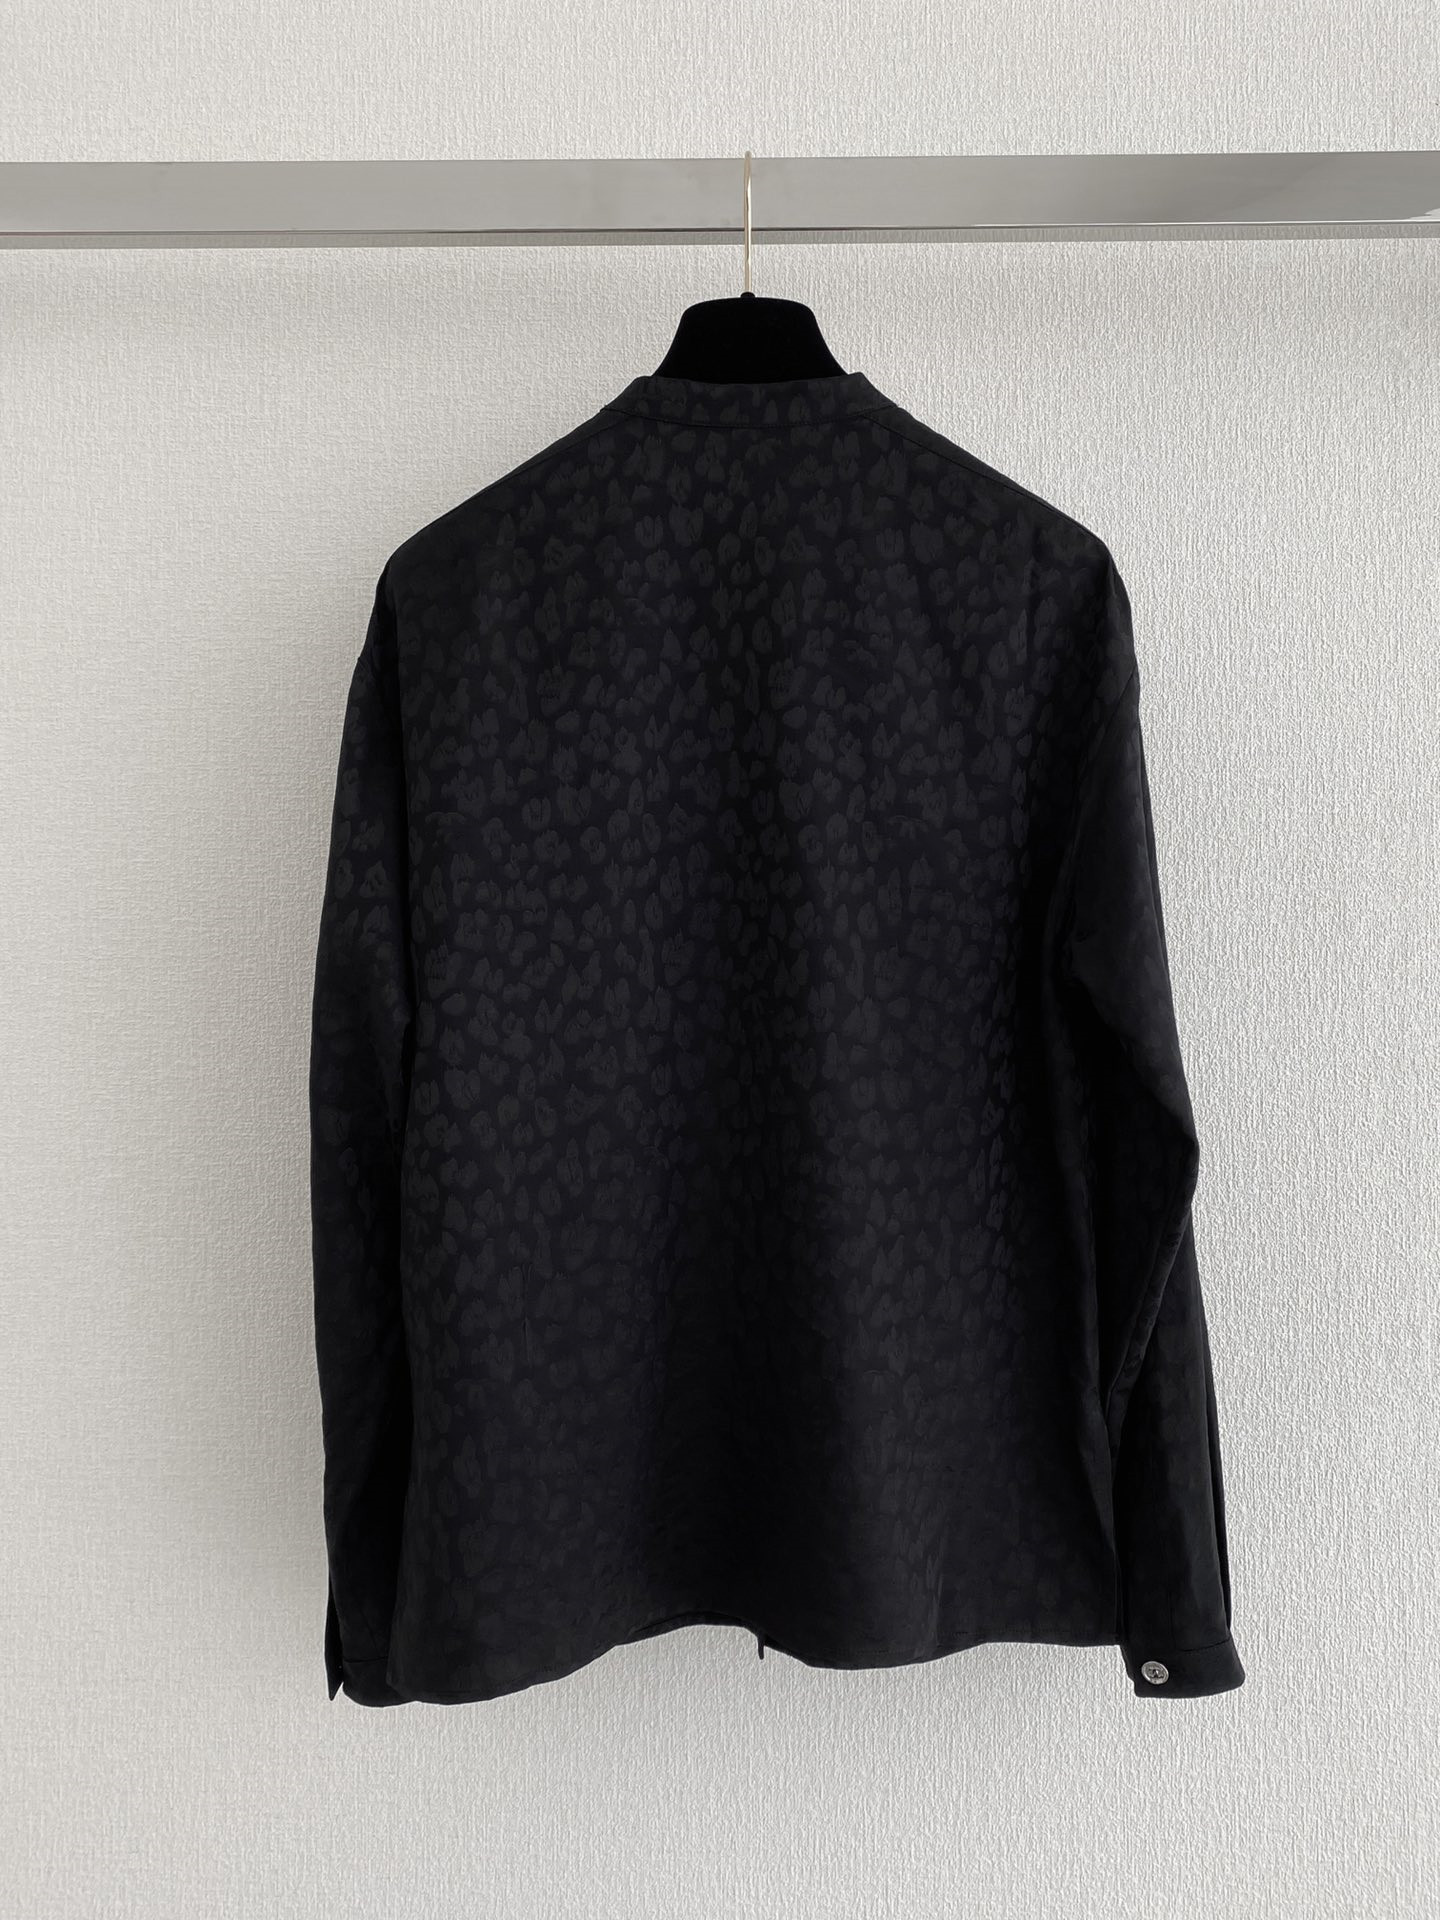 Свитера дизайнерские женские свитера ретро классические роскошные толстовки с вышивкой букв на рукавах удобный высококачественный джемпер S2 E2V6